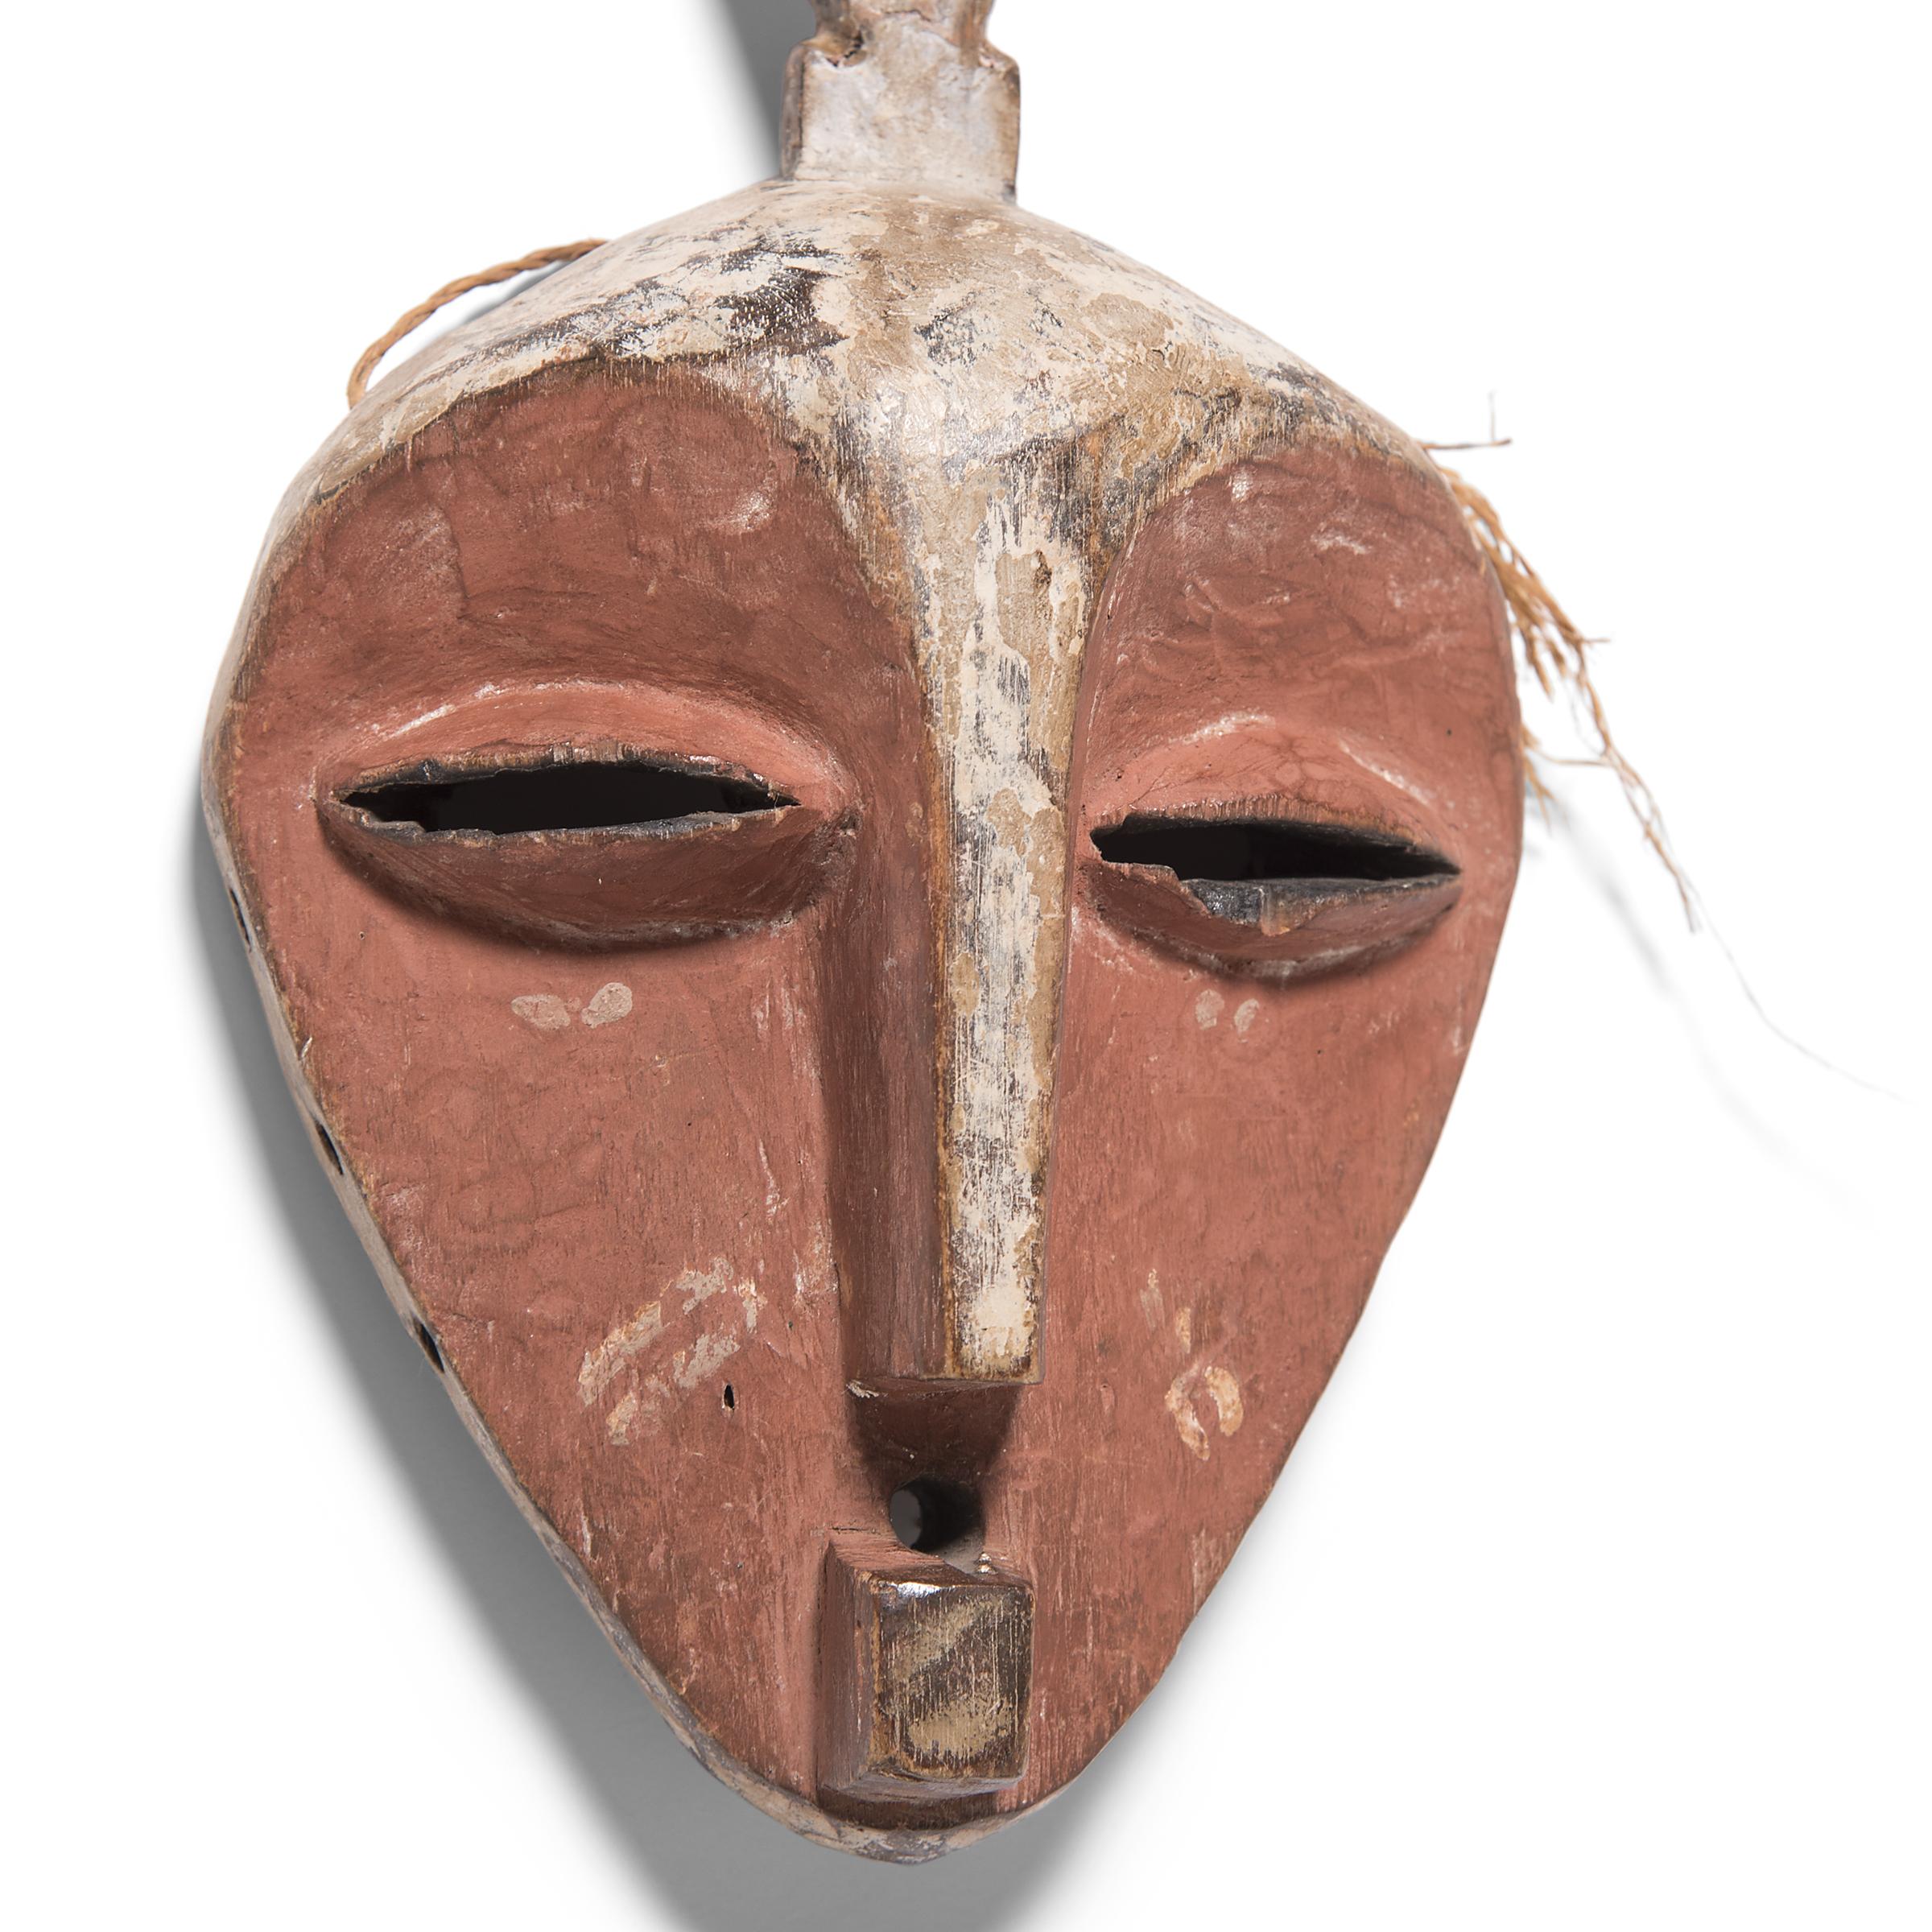 Les masques du peuple Pende de la République démocratique du Congo sont considérés comme l'une des œuvres les plus spectaculaires de l'art africain. Les Pende ont défini un large éventail de formes de masques, dont beaucoup présentent des